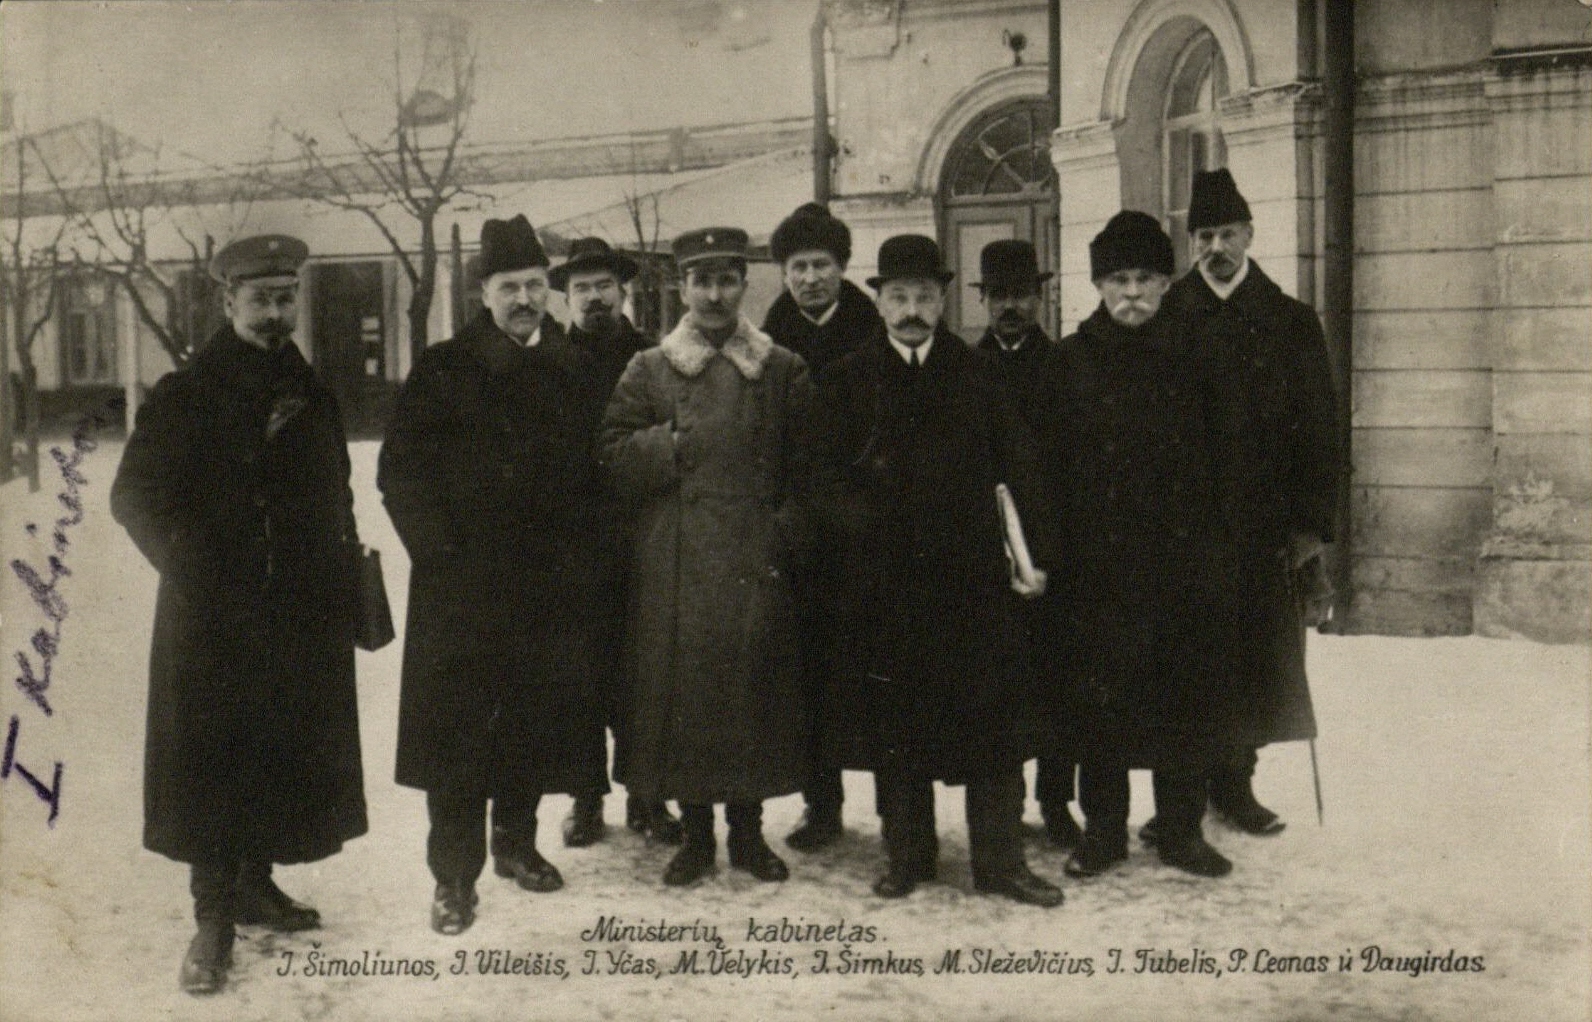 II Ministrų kabinetas: J. Šimoliūnas, J. Vileišis, J. Yčas, M. Velykis, J. Šimkus, M. Sleževičius, J. Tūbelis, P. Leonas, K. Daugirdas. [1919]